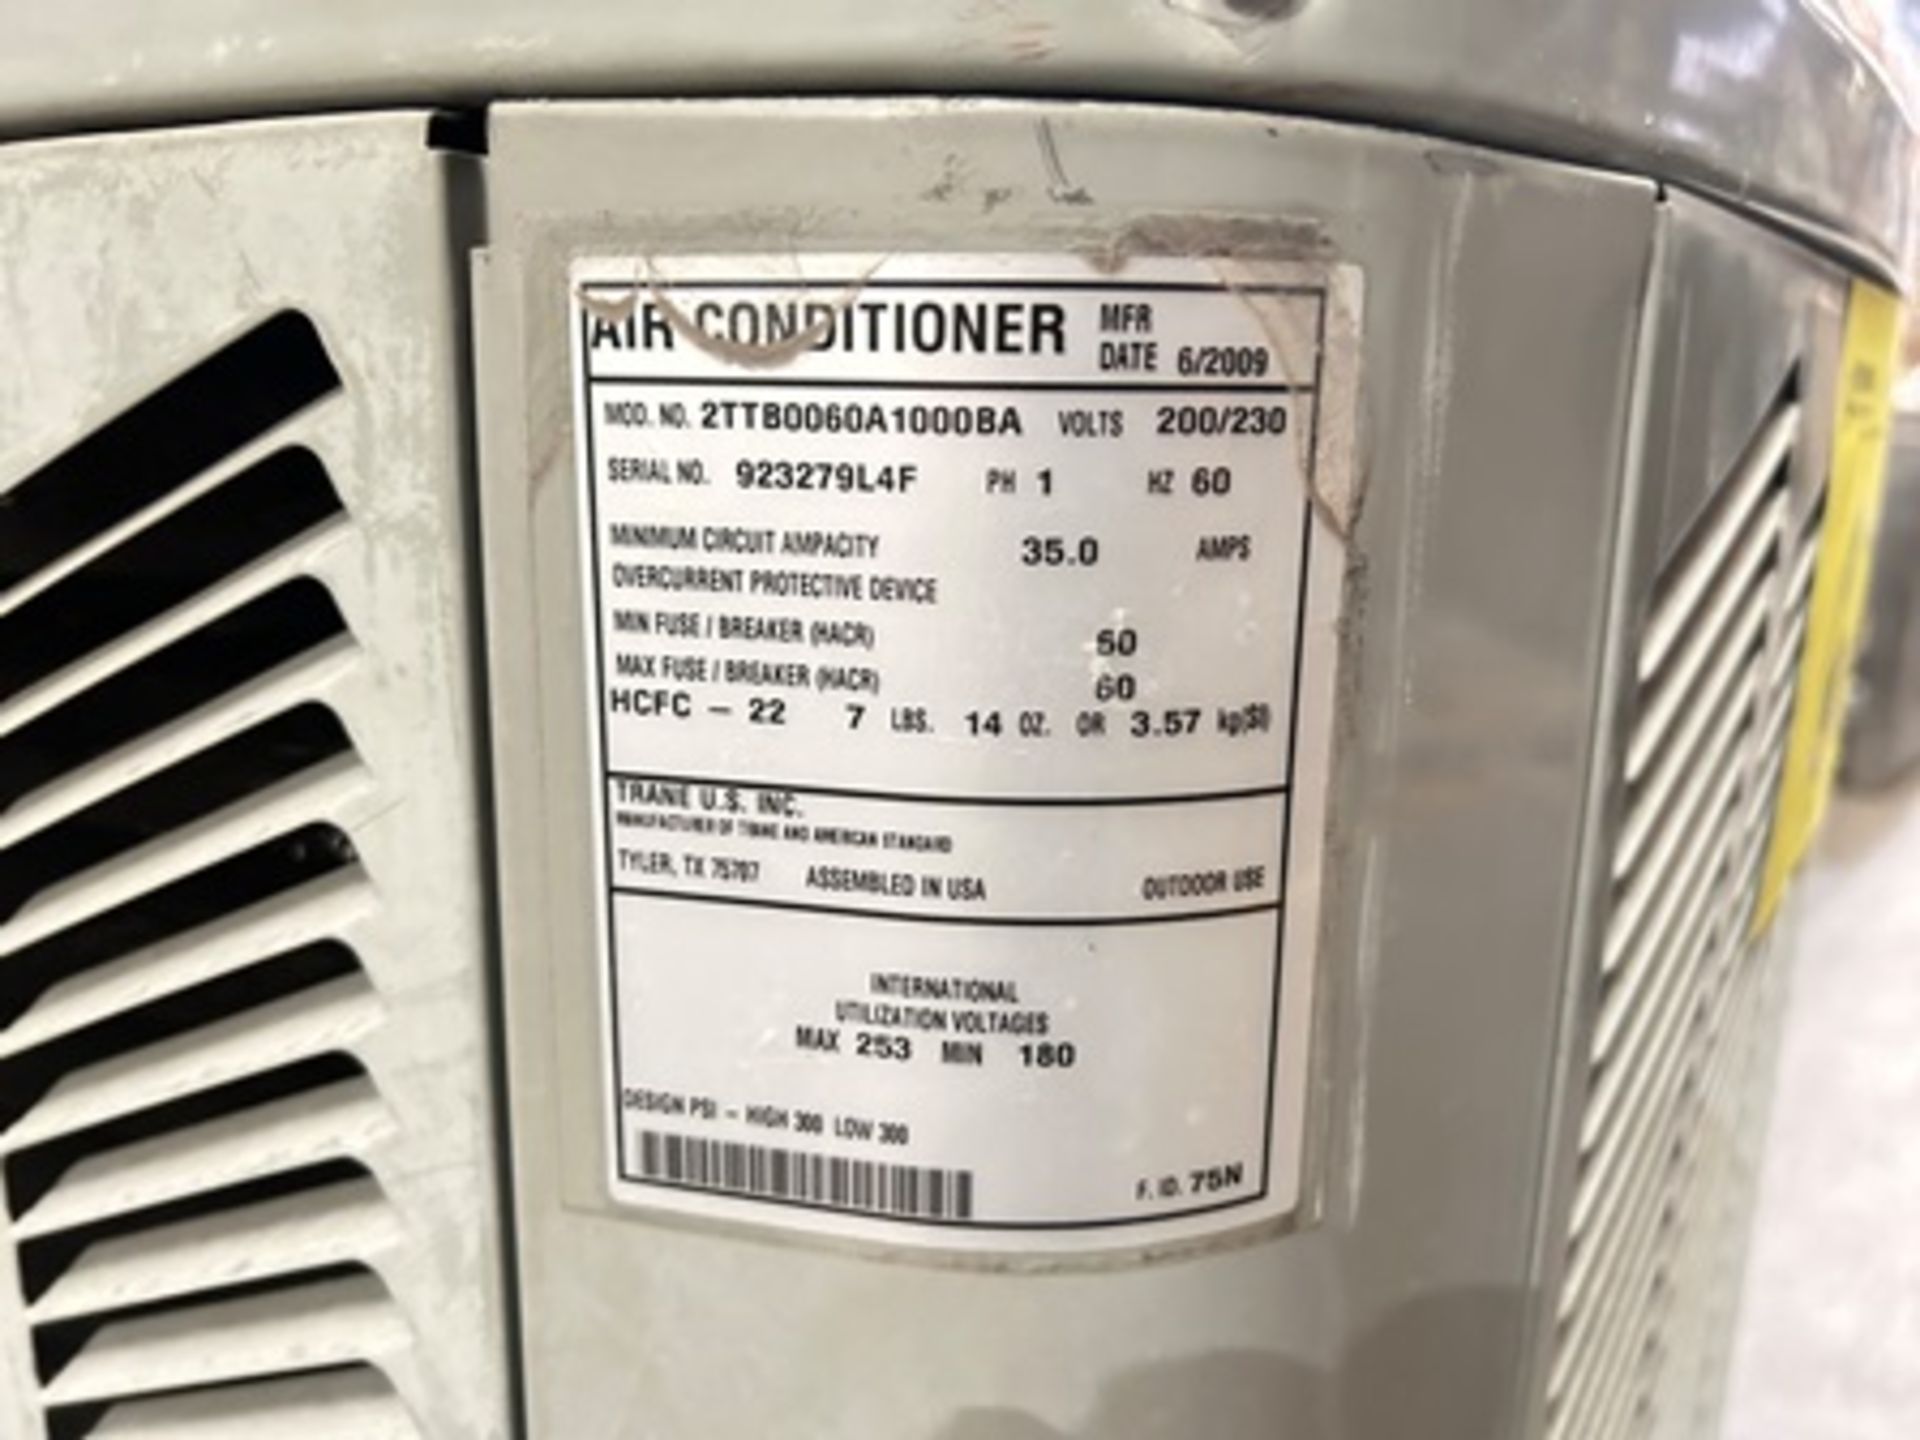 1 Condensador Marca TRANE, Modelo 2TTB0060A1000BA, Serie 923279l4f, Color Gris, 200-230 v, 60 Hz (E - Image 5 of 6